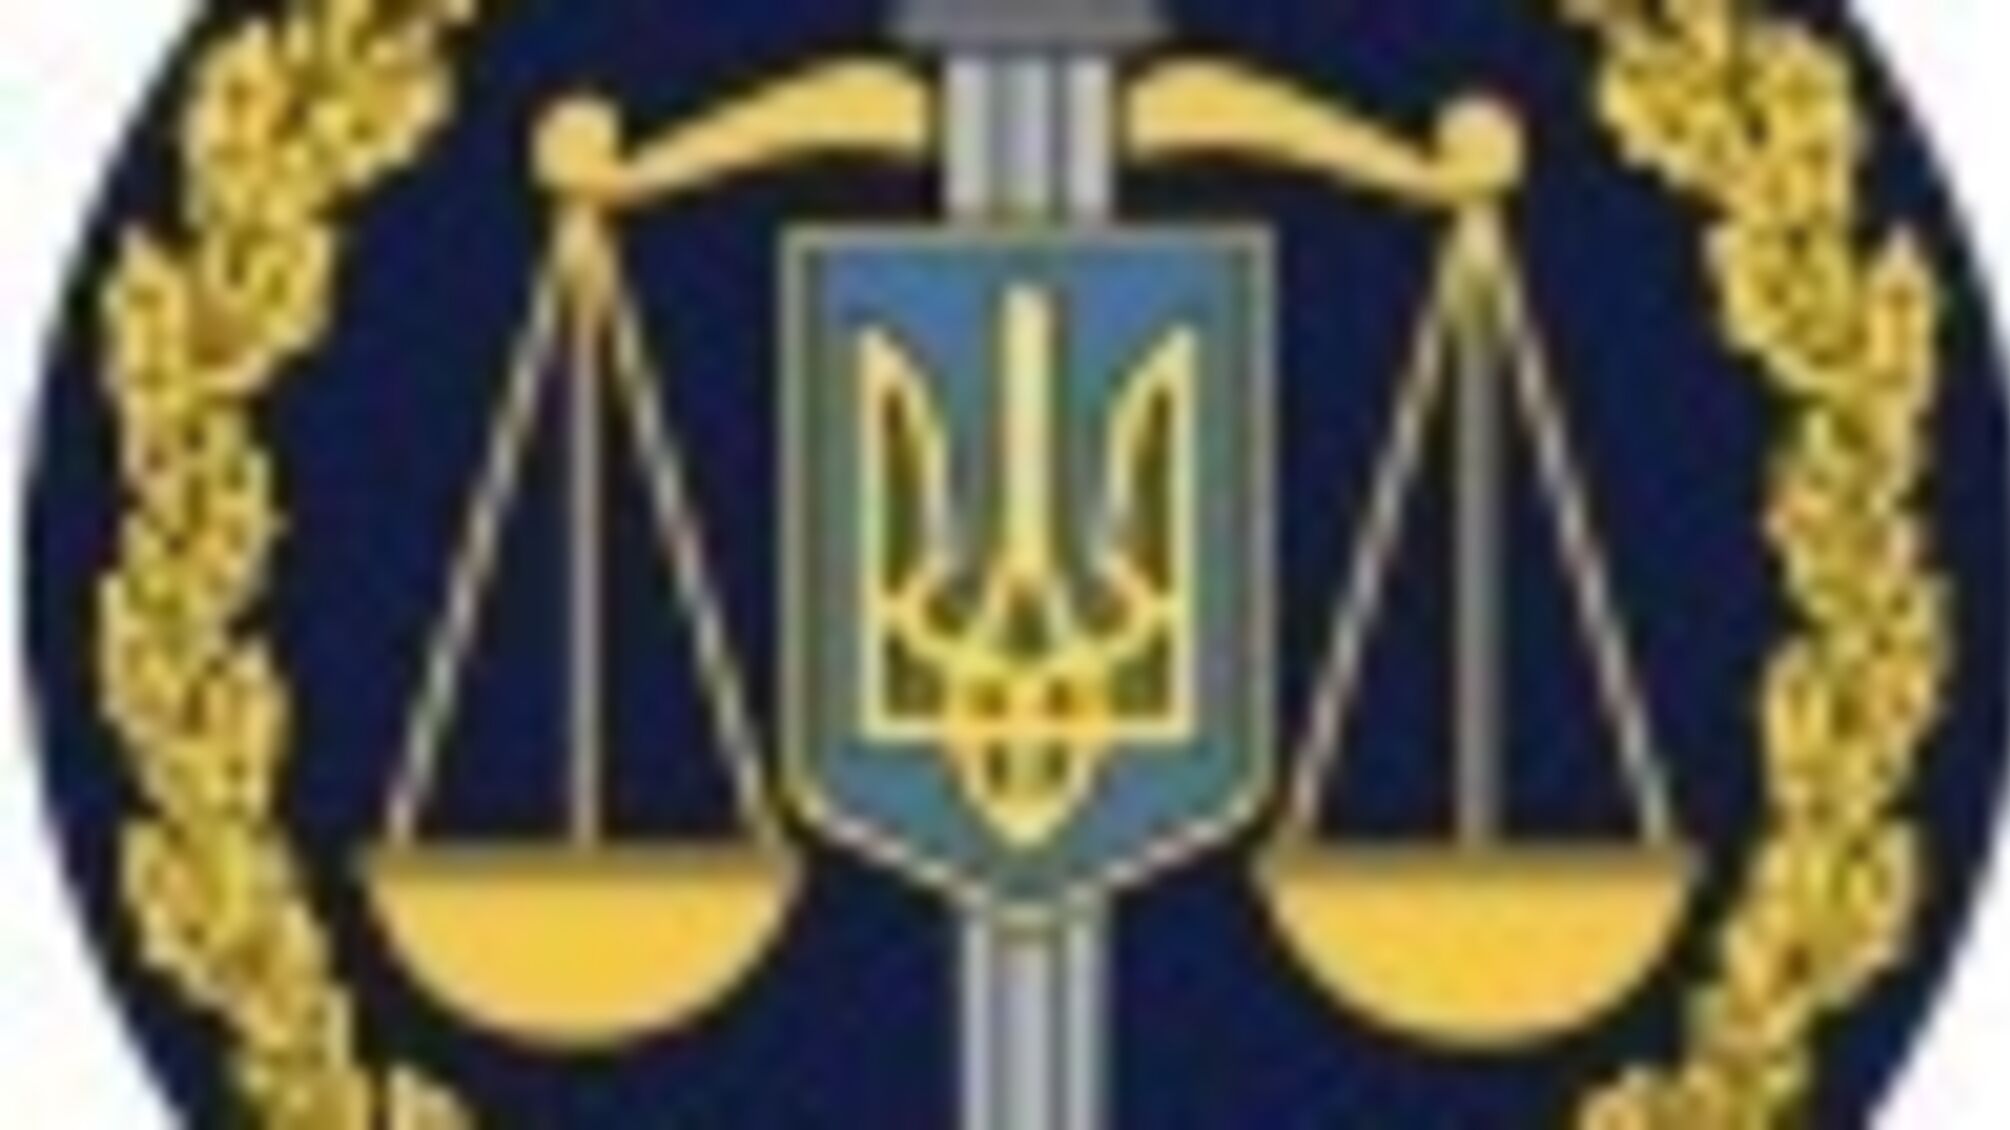 Незаконне заволодіння майже 530 тис. грн — співробітниці «Укрпошти» повідомлено про підозру (ФОТО)